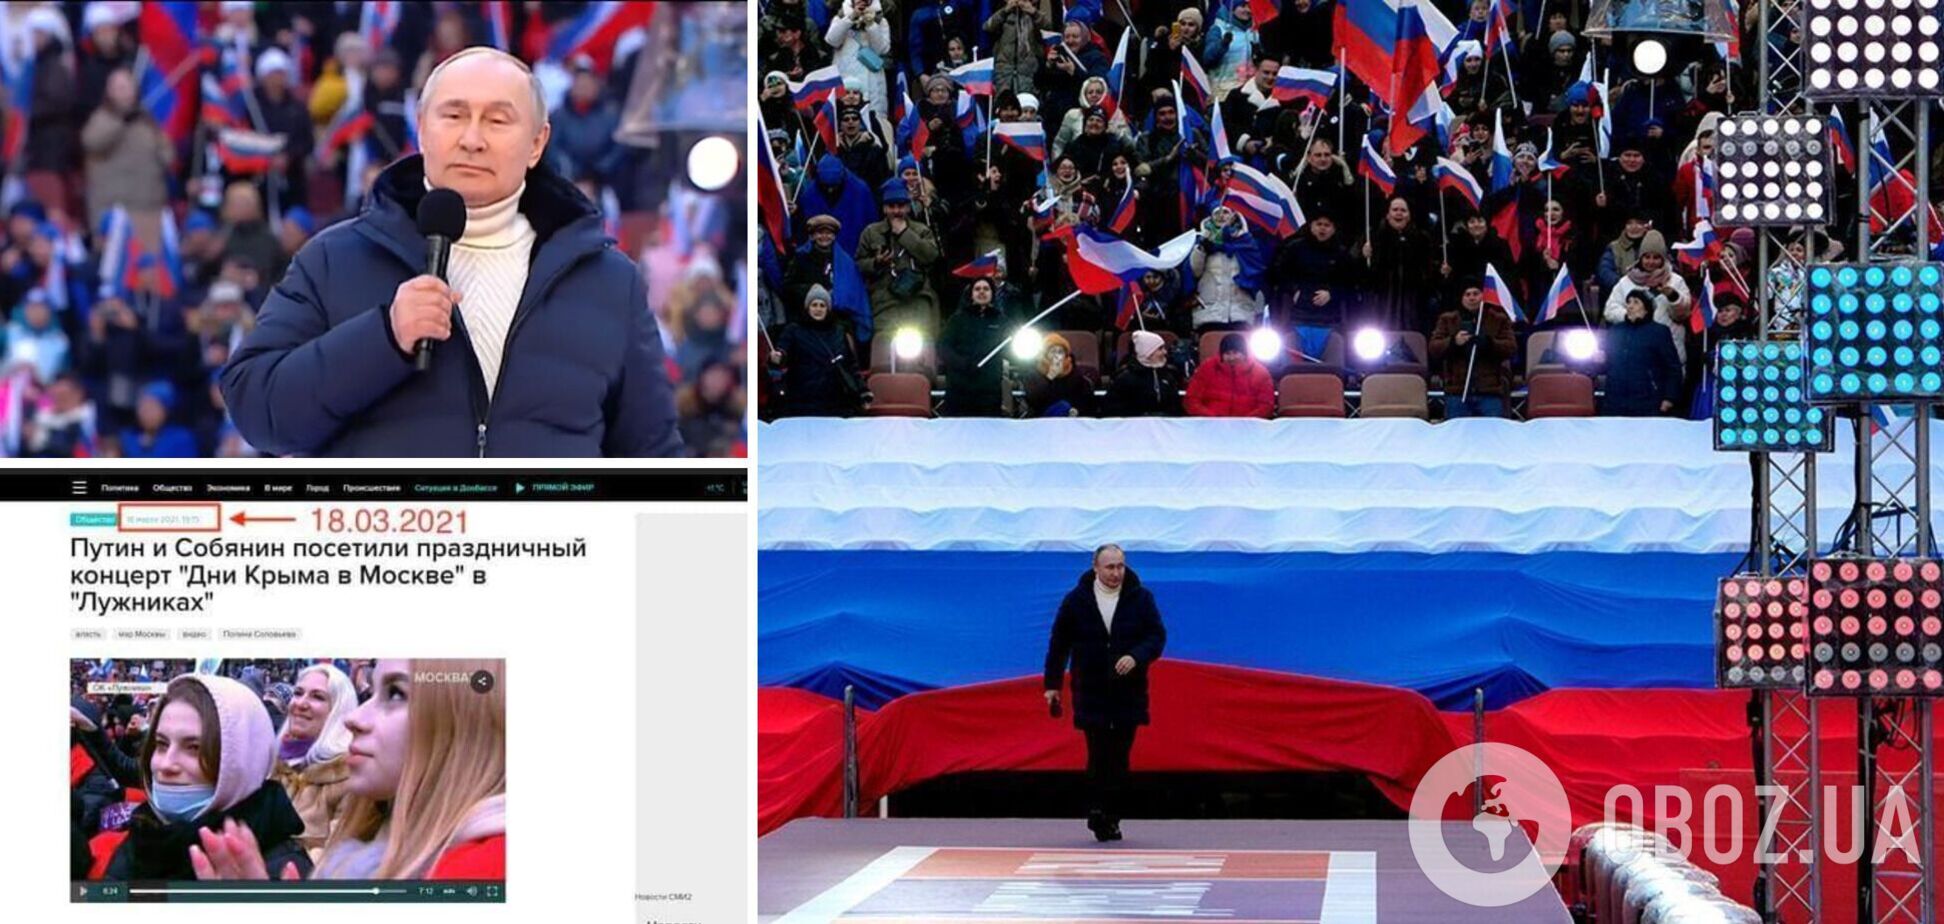 Вирішили не напружуватися: з'явився ще один доказ фейкового 'концерту' на підтримку Путіна у Москві. Фото